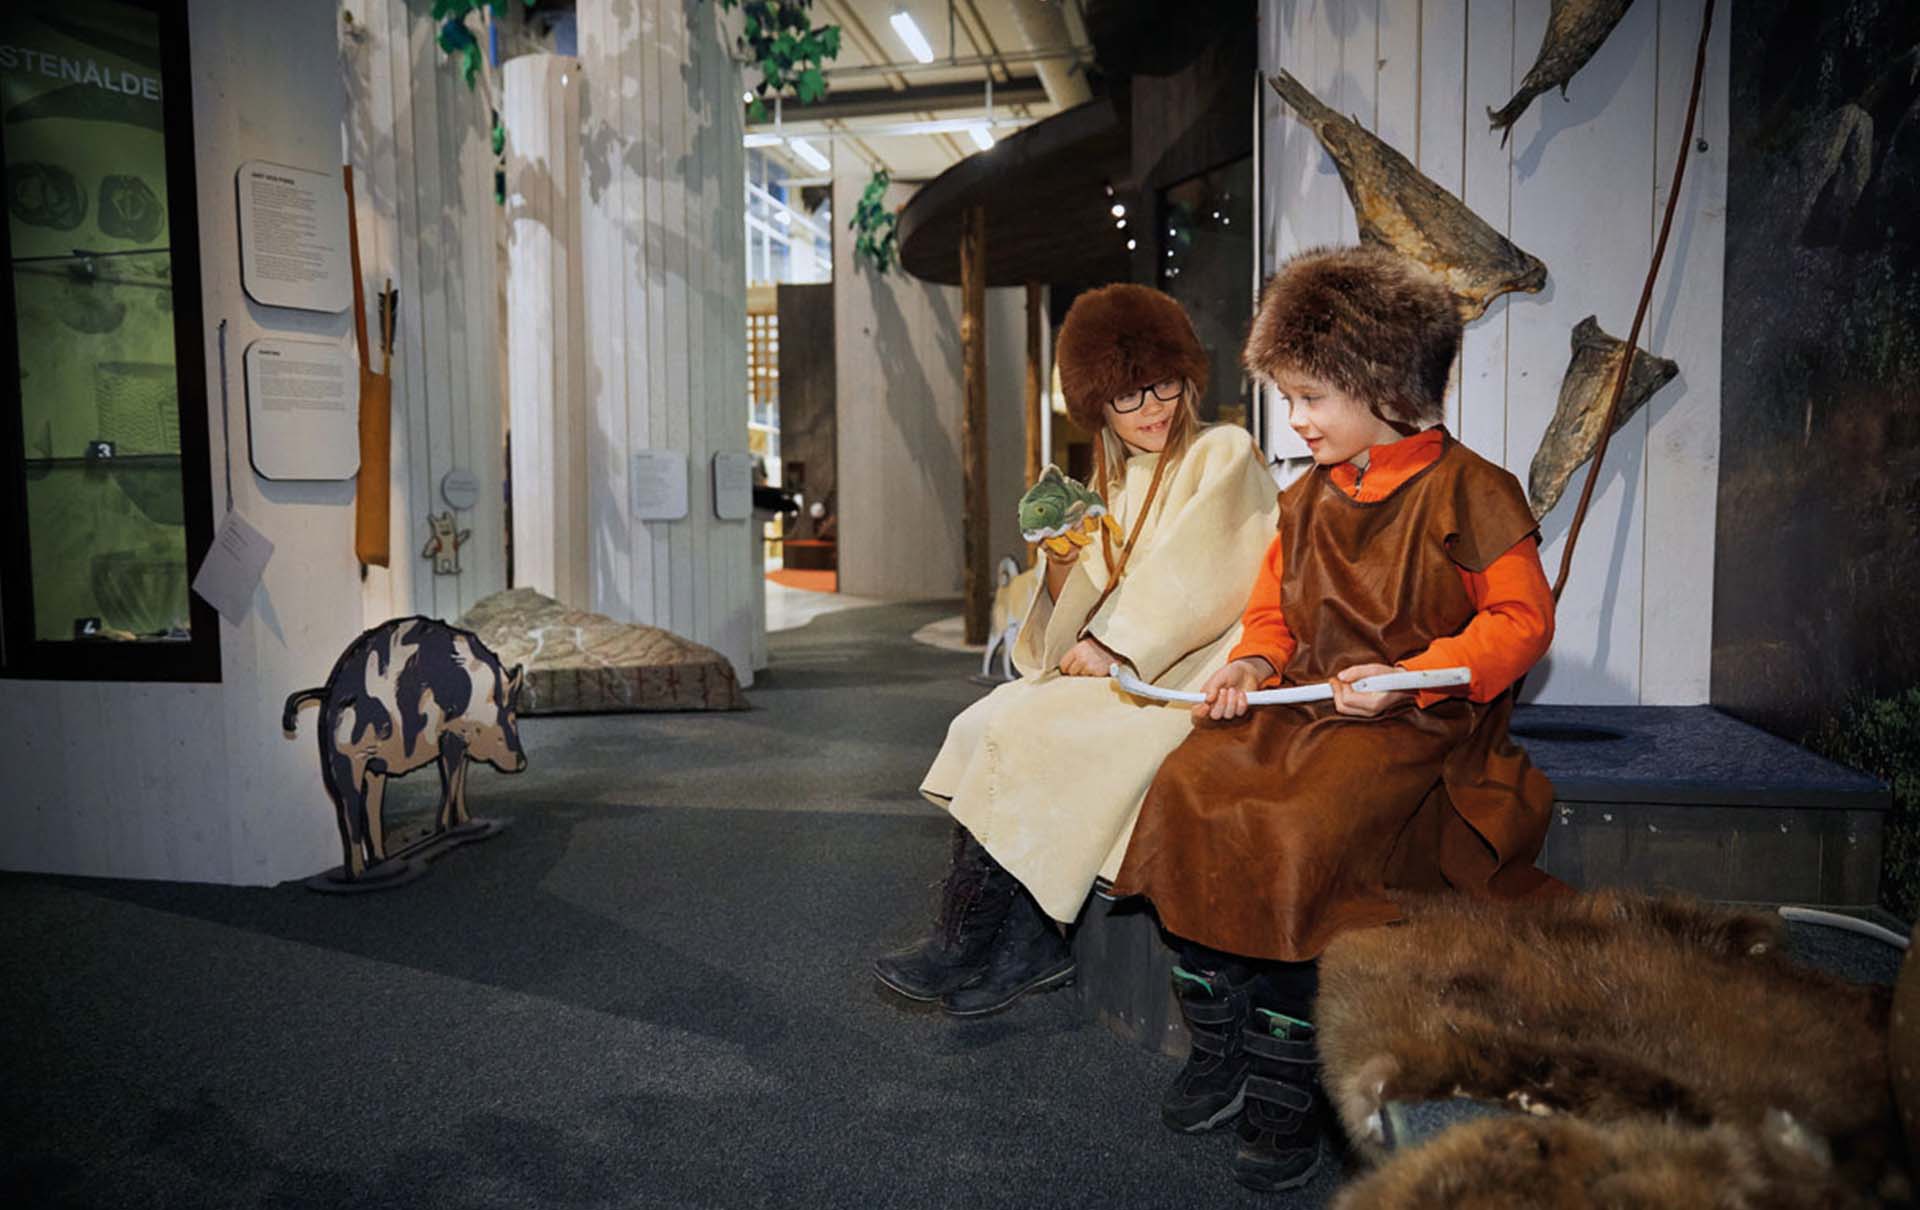 Två barn sitter i en museimiljö med tidsenliga kläder. Foto: Lasse Fredriksson.